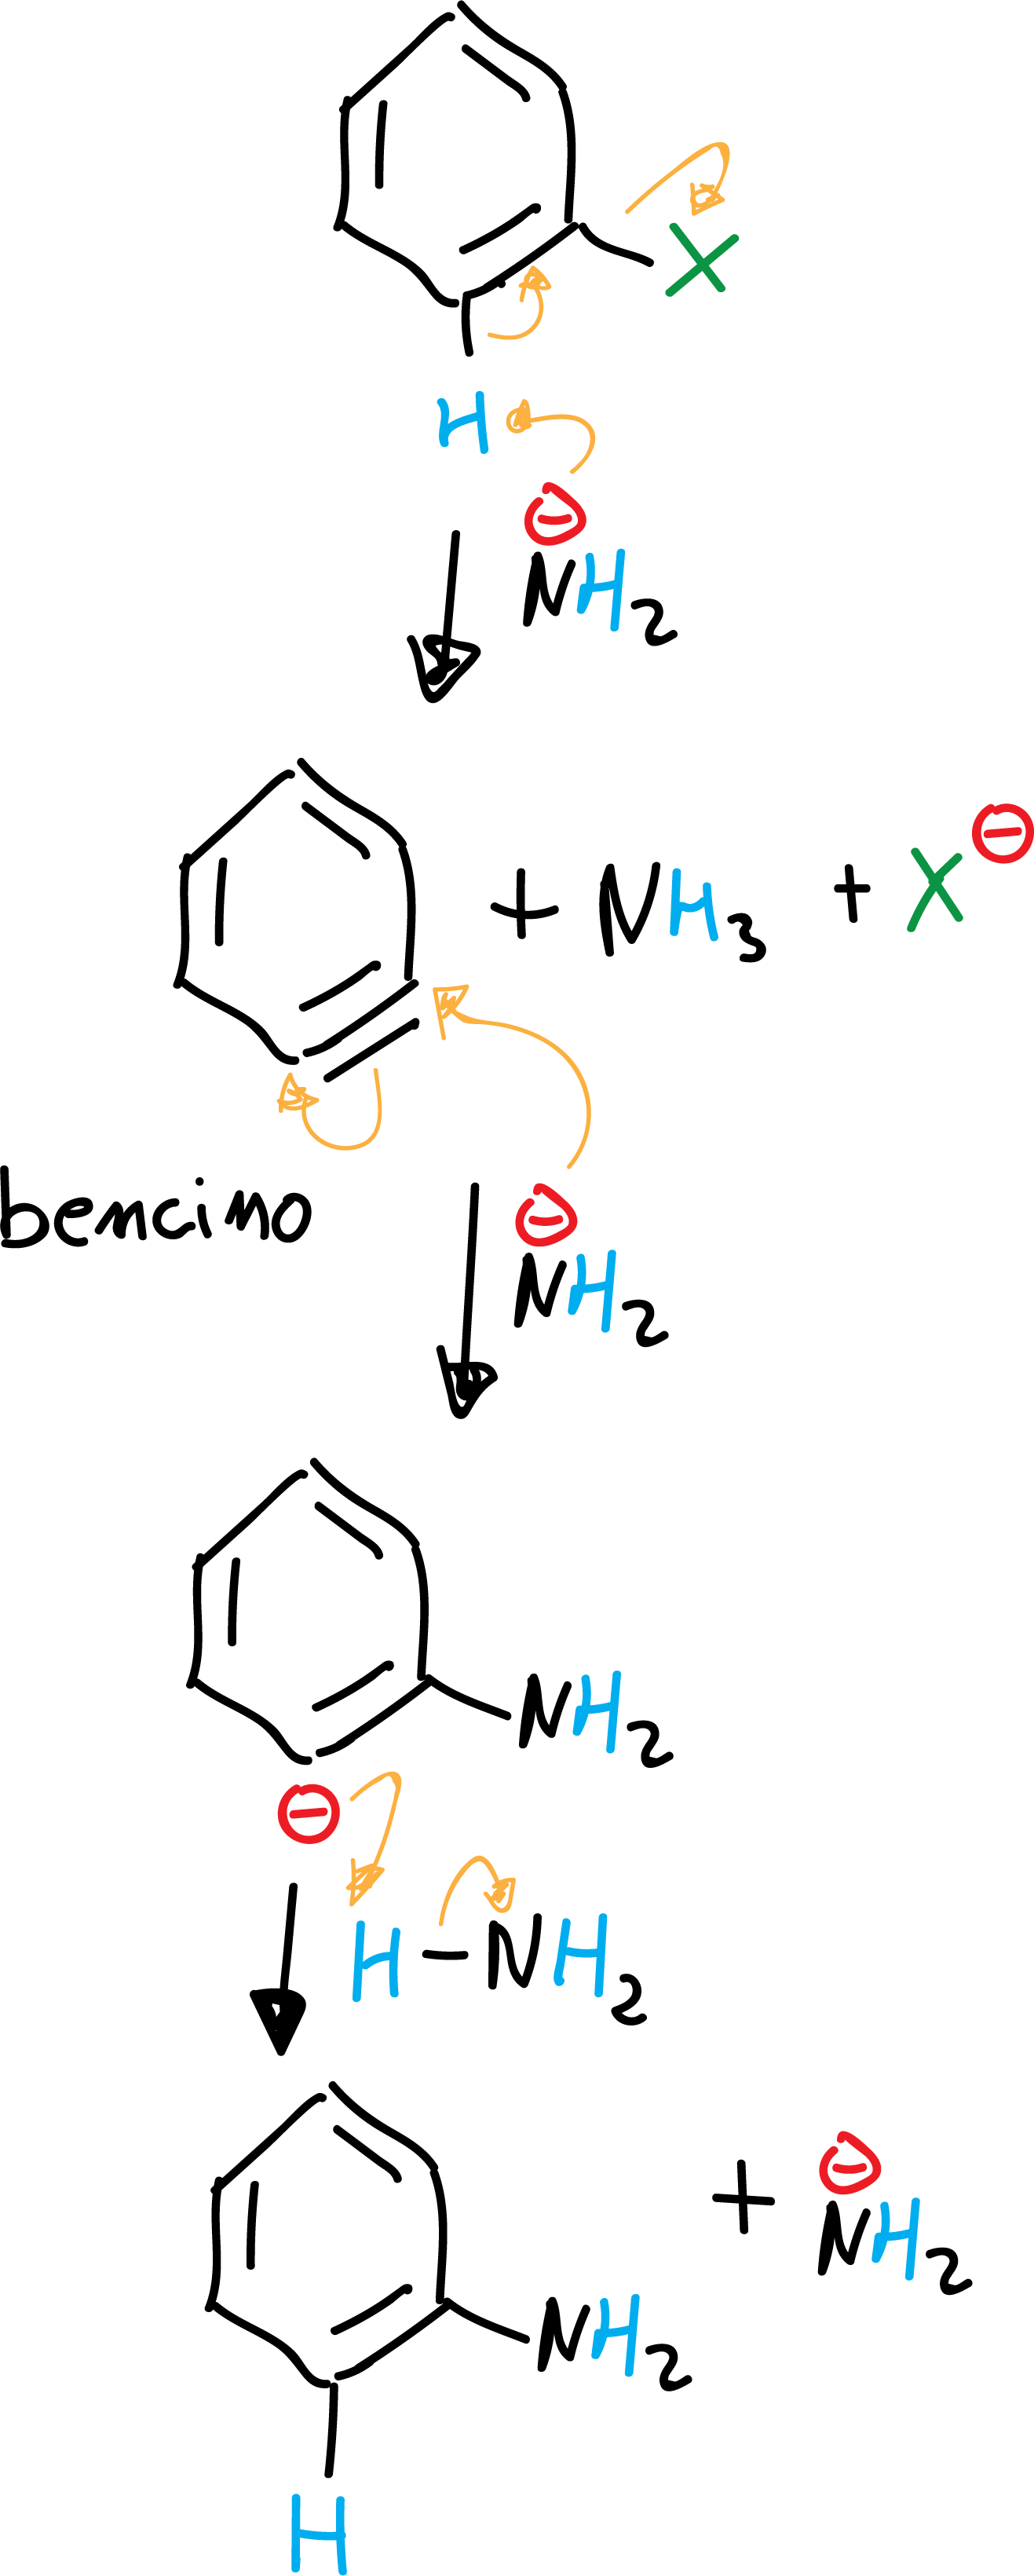 Sustitución nucleofílica aromática SNAr mecanismo eliminacion-adicion via bencino